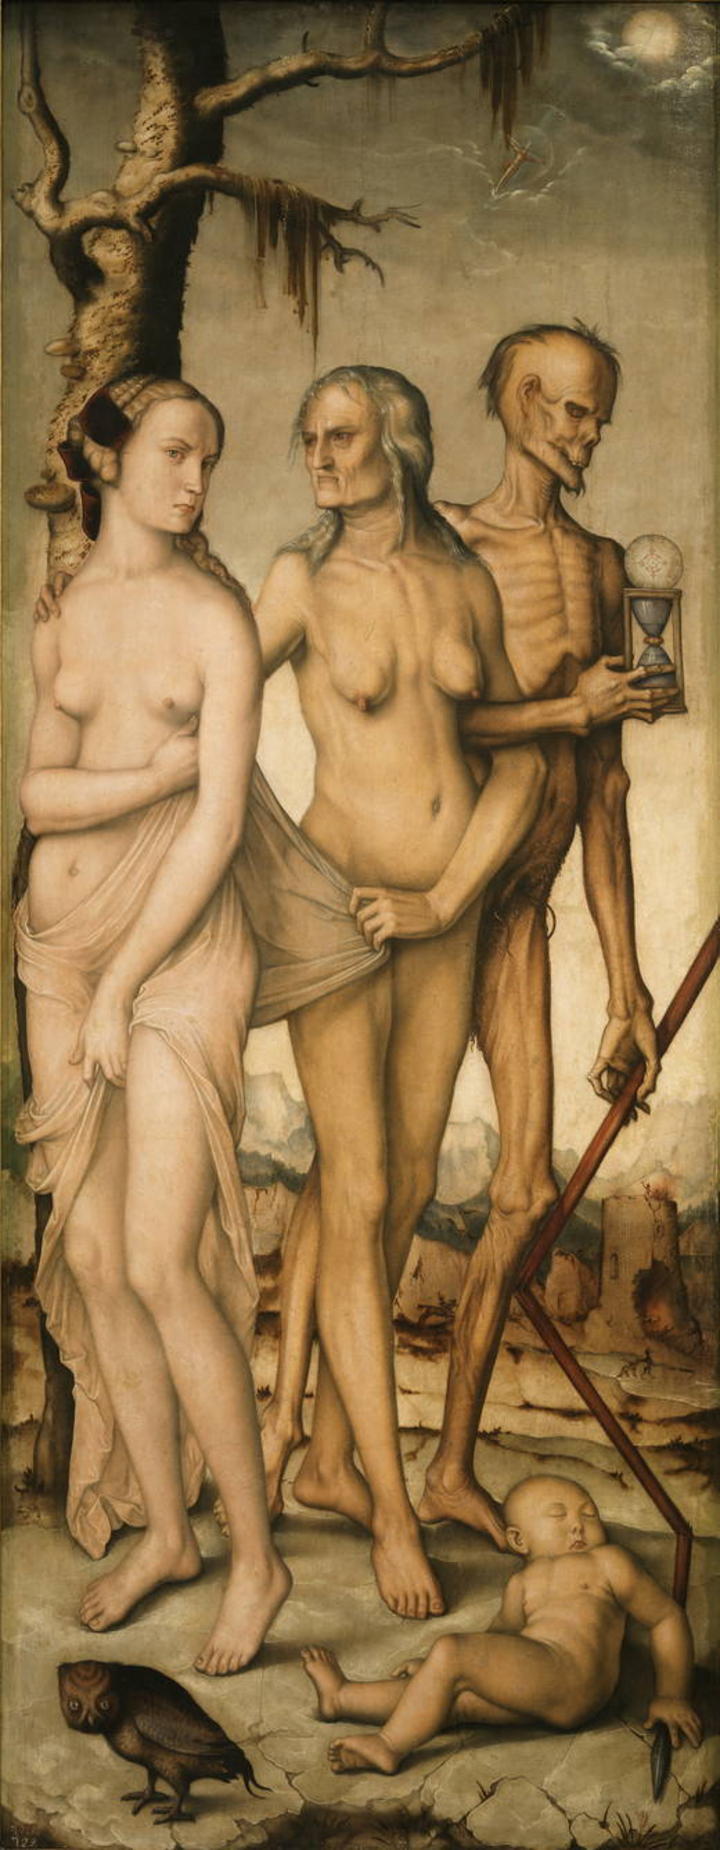 Actualmente, “Las Edades y la Muerte”, de 'Grien', forma parte de la colección del Museo del Prado, donde se encuentra expuesto. (MUSEO DEL PRADO)